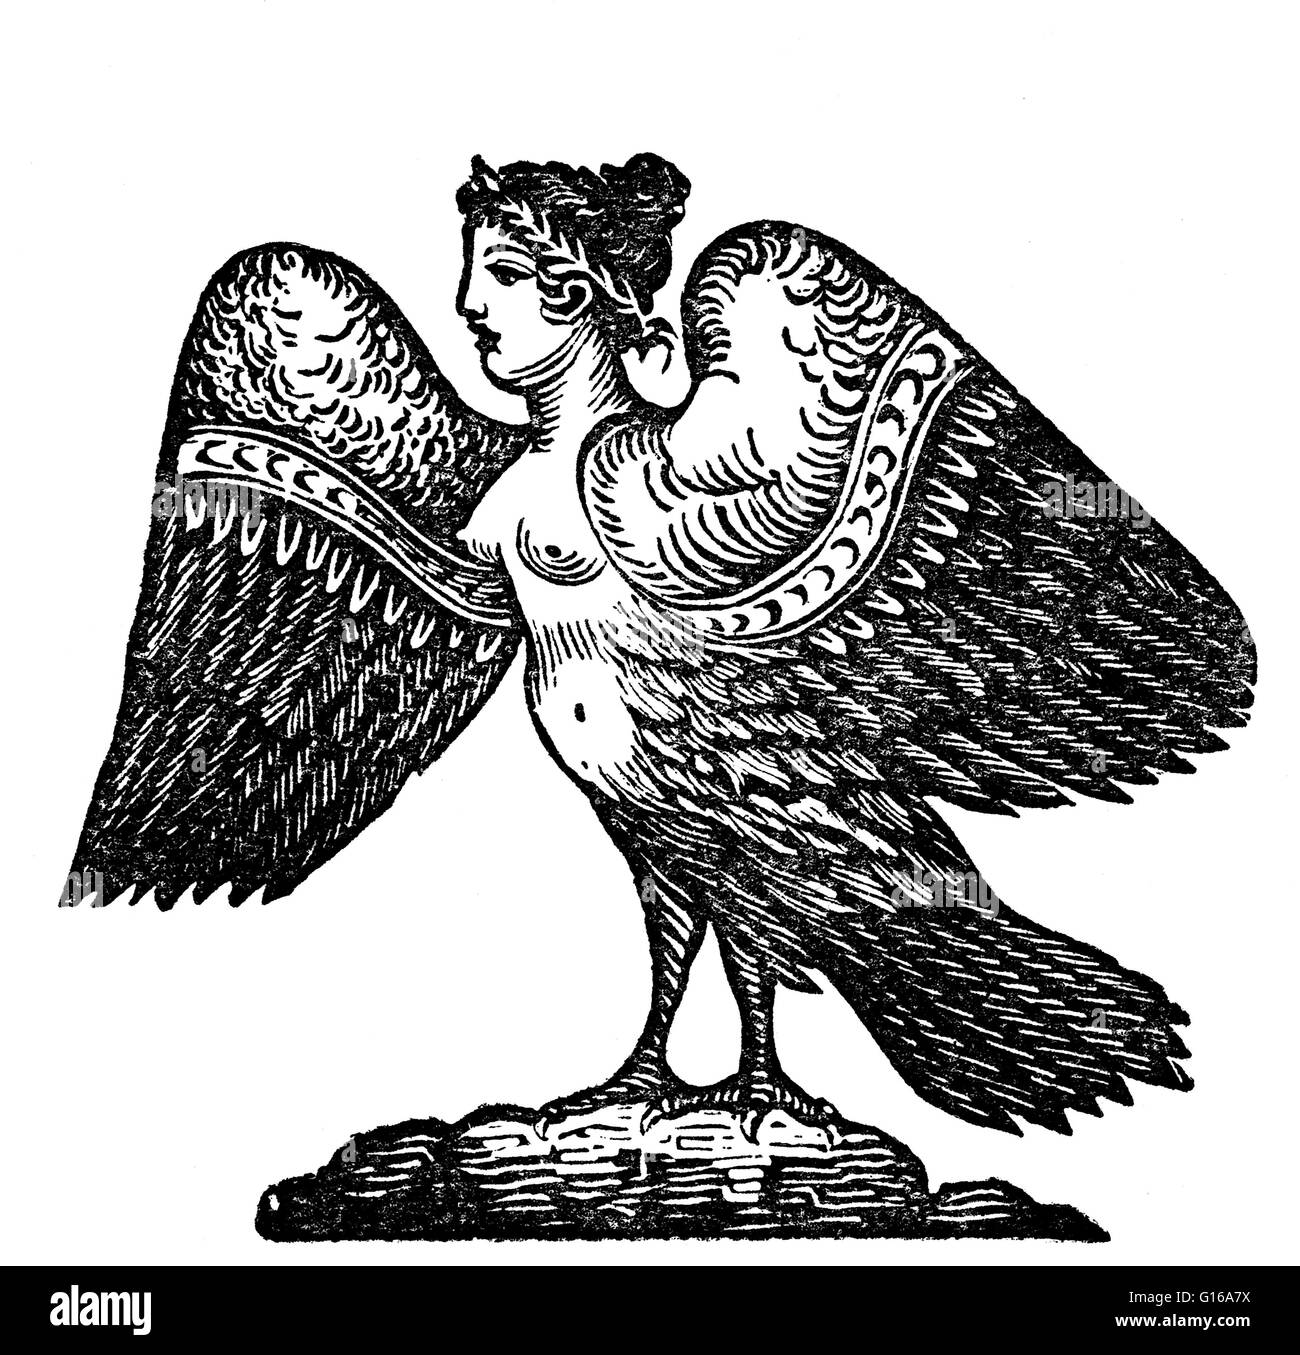 In früheren Versionen der griechischen Mythologie wurden Harpies als schöne, geflügelte Mädchen beschrieben. Später sie wurden geflügelte Monster mit dem Gesicht eine hässliche alte Frau und mit krummen, scharfen Krallen ausgestattet. Oft beschrieben als ein Heißhunger, dreckigen Monster mit einem wo Stockfoto